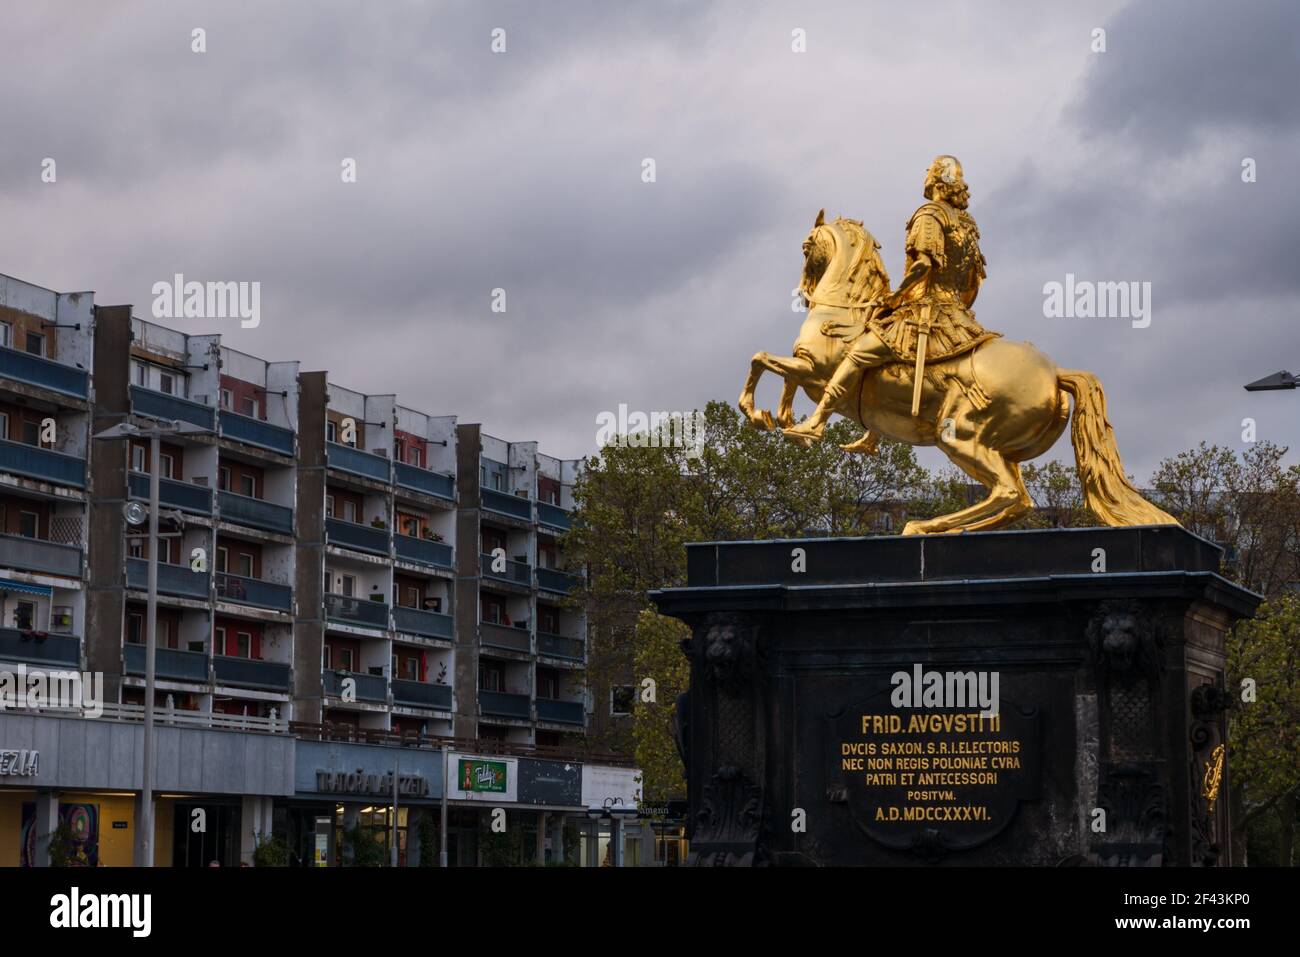 Golden Horseman agosto la forte statua di fronte a vecchi edifici residenziali rotti della Germania orientale. Sullo sfondo c'è un cielo nuvoloso e drammatico. Foto Stock